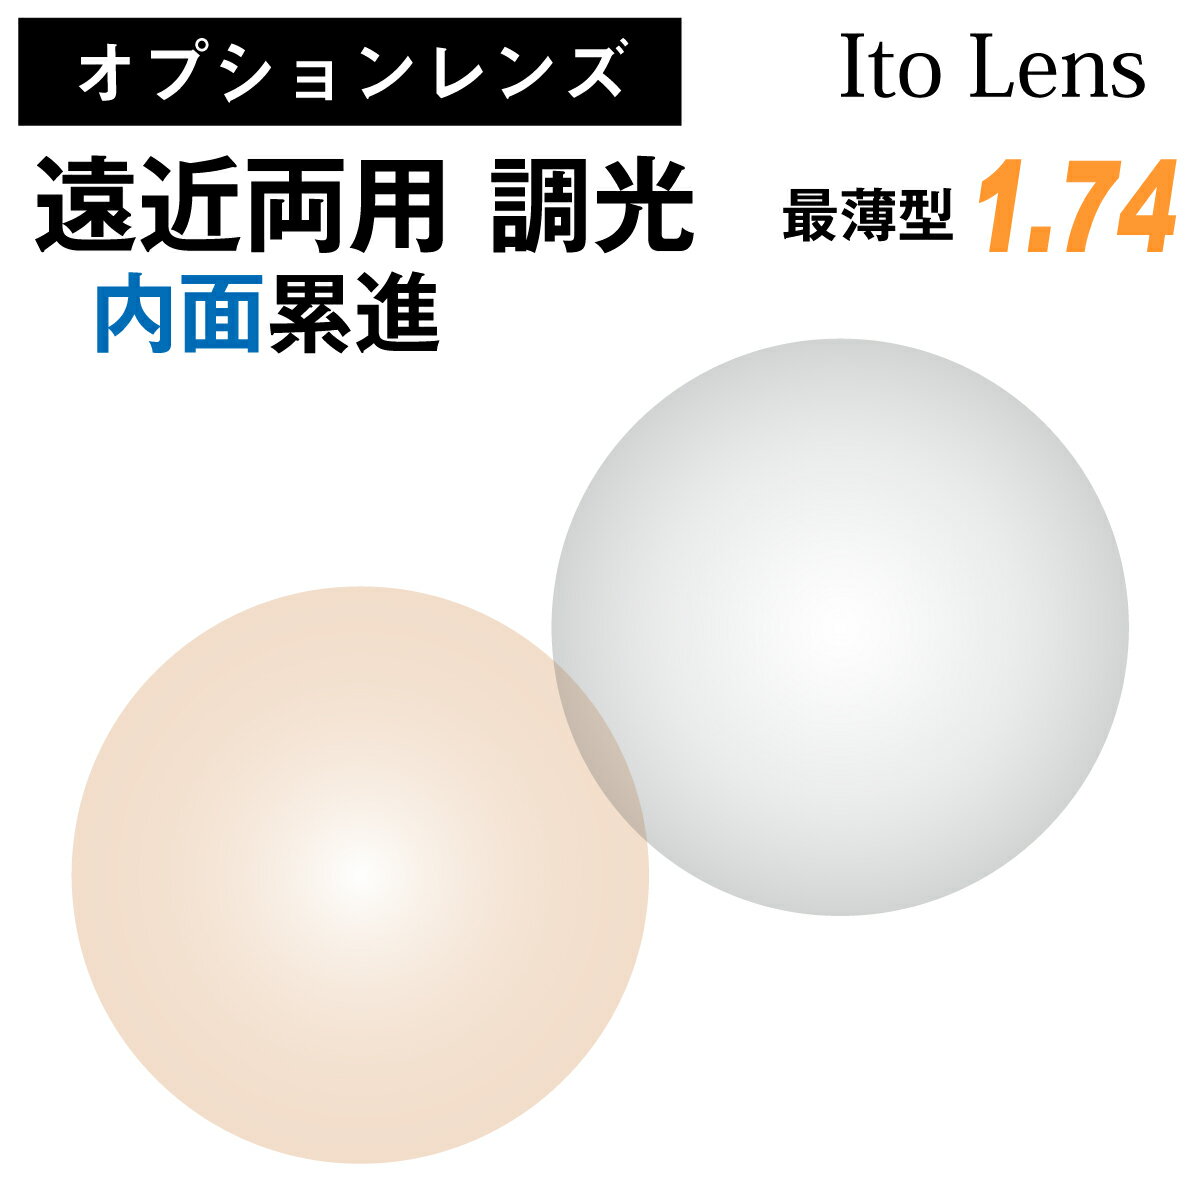 【オプションレンズ】イトーレンズ 遠近両用 内面累進 調光 グレー ブラウン レンズ 最薄型 屈折率 1.74 日本製 （2枚1組） Ito Lens メガネ 眼鏡 境目なし UVカット 紫外線カット カラーレンズ op-ito